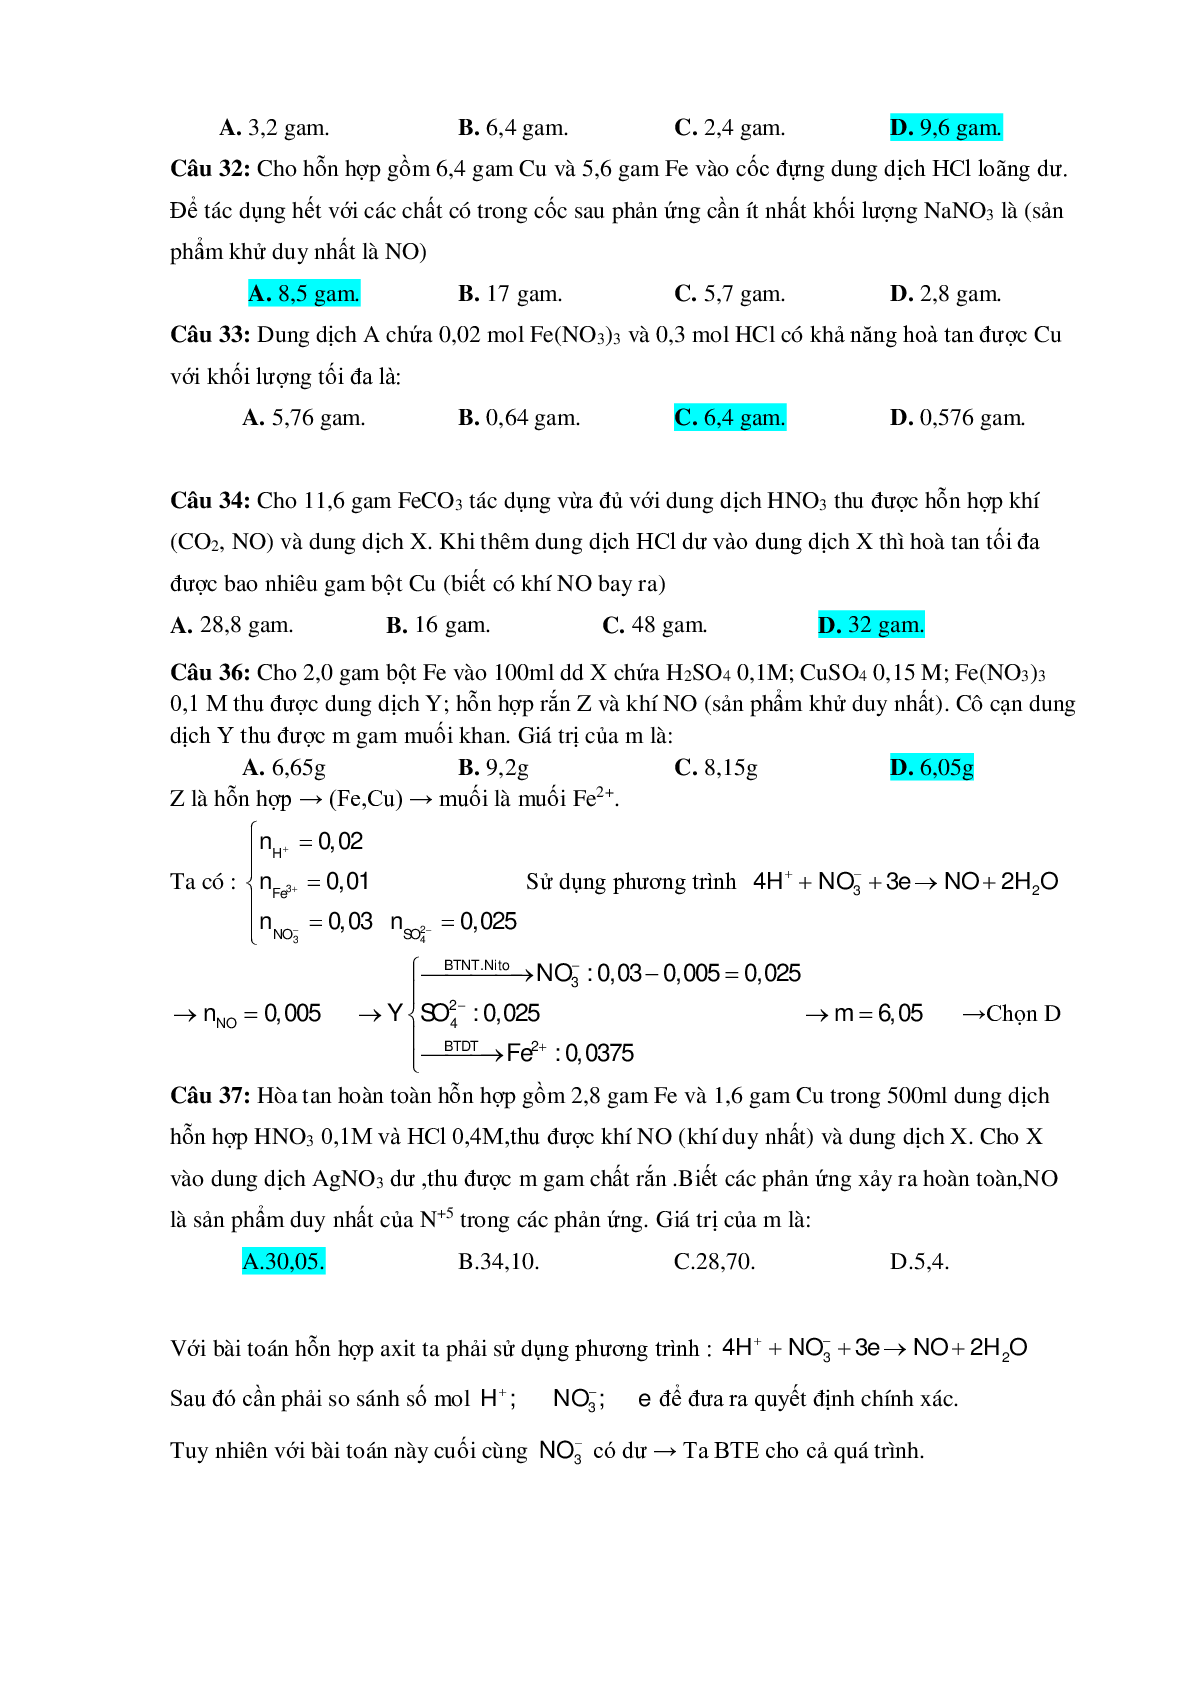 Bài tập về HNO3 vận dụng cao với phương pháp bảo toàn electron có đáp án (trang 9)